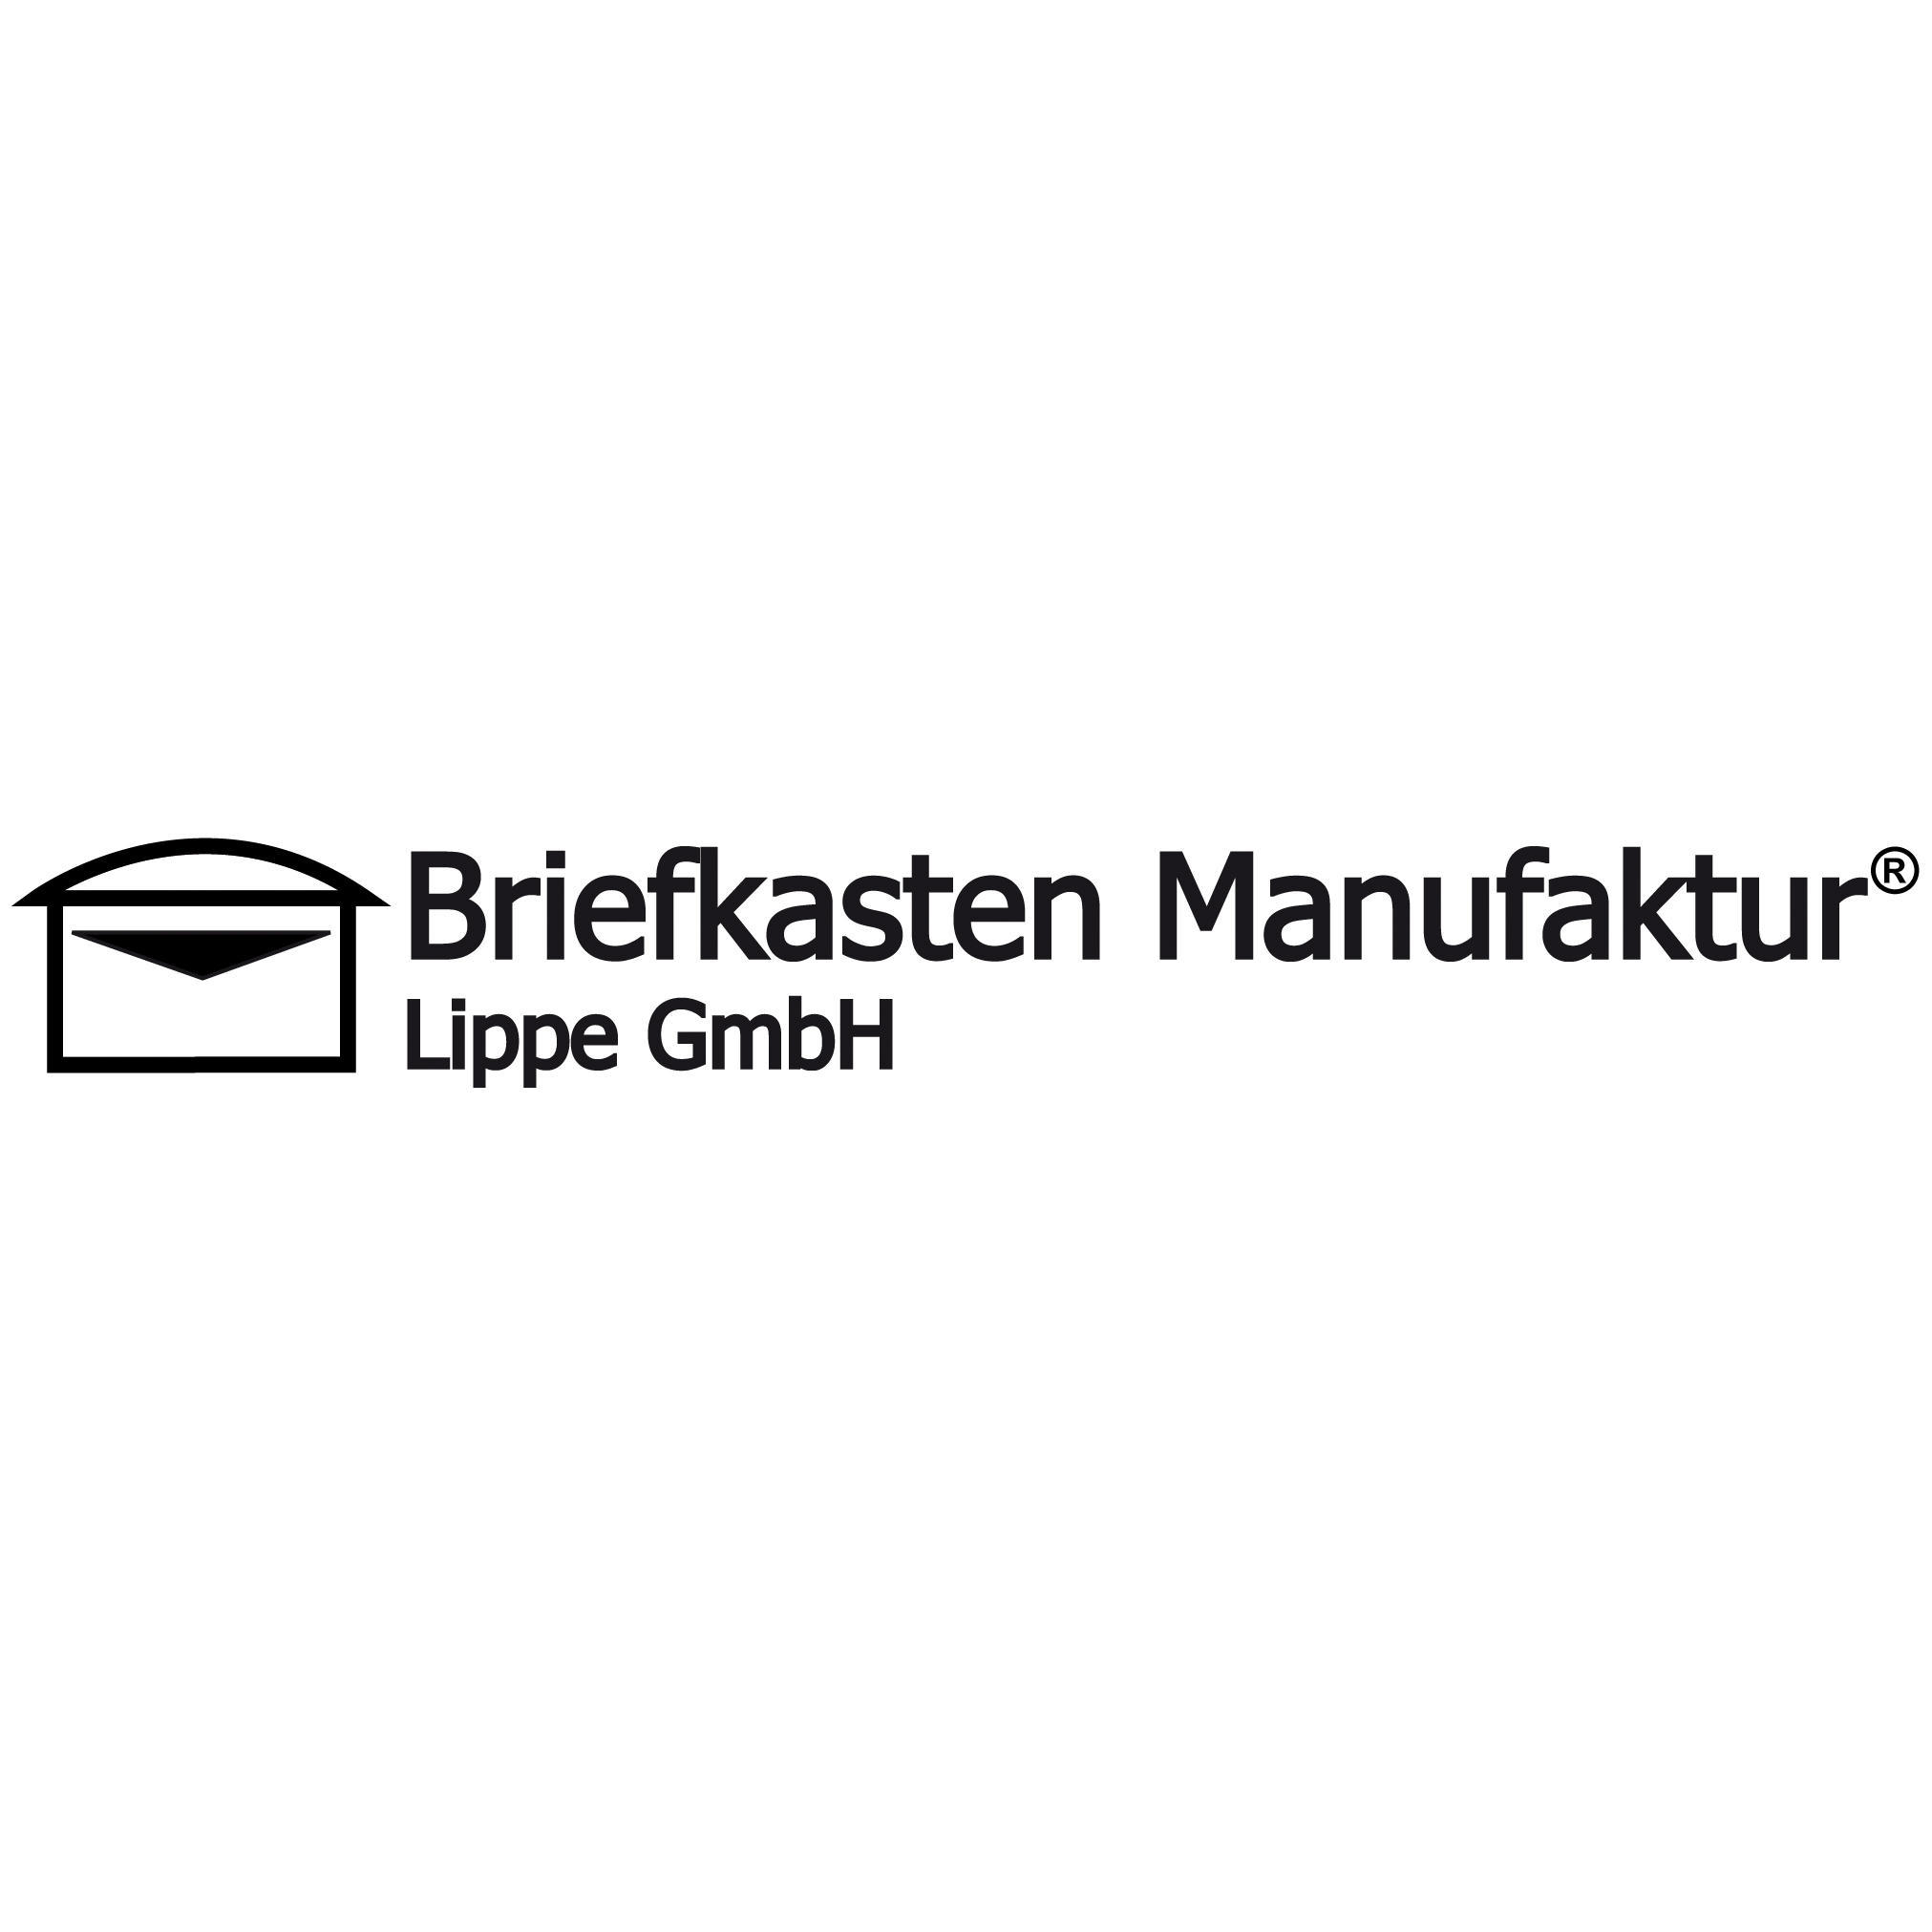 Logo Briefkasten Manufaktur Lippe GmbH